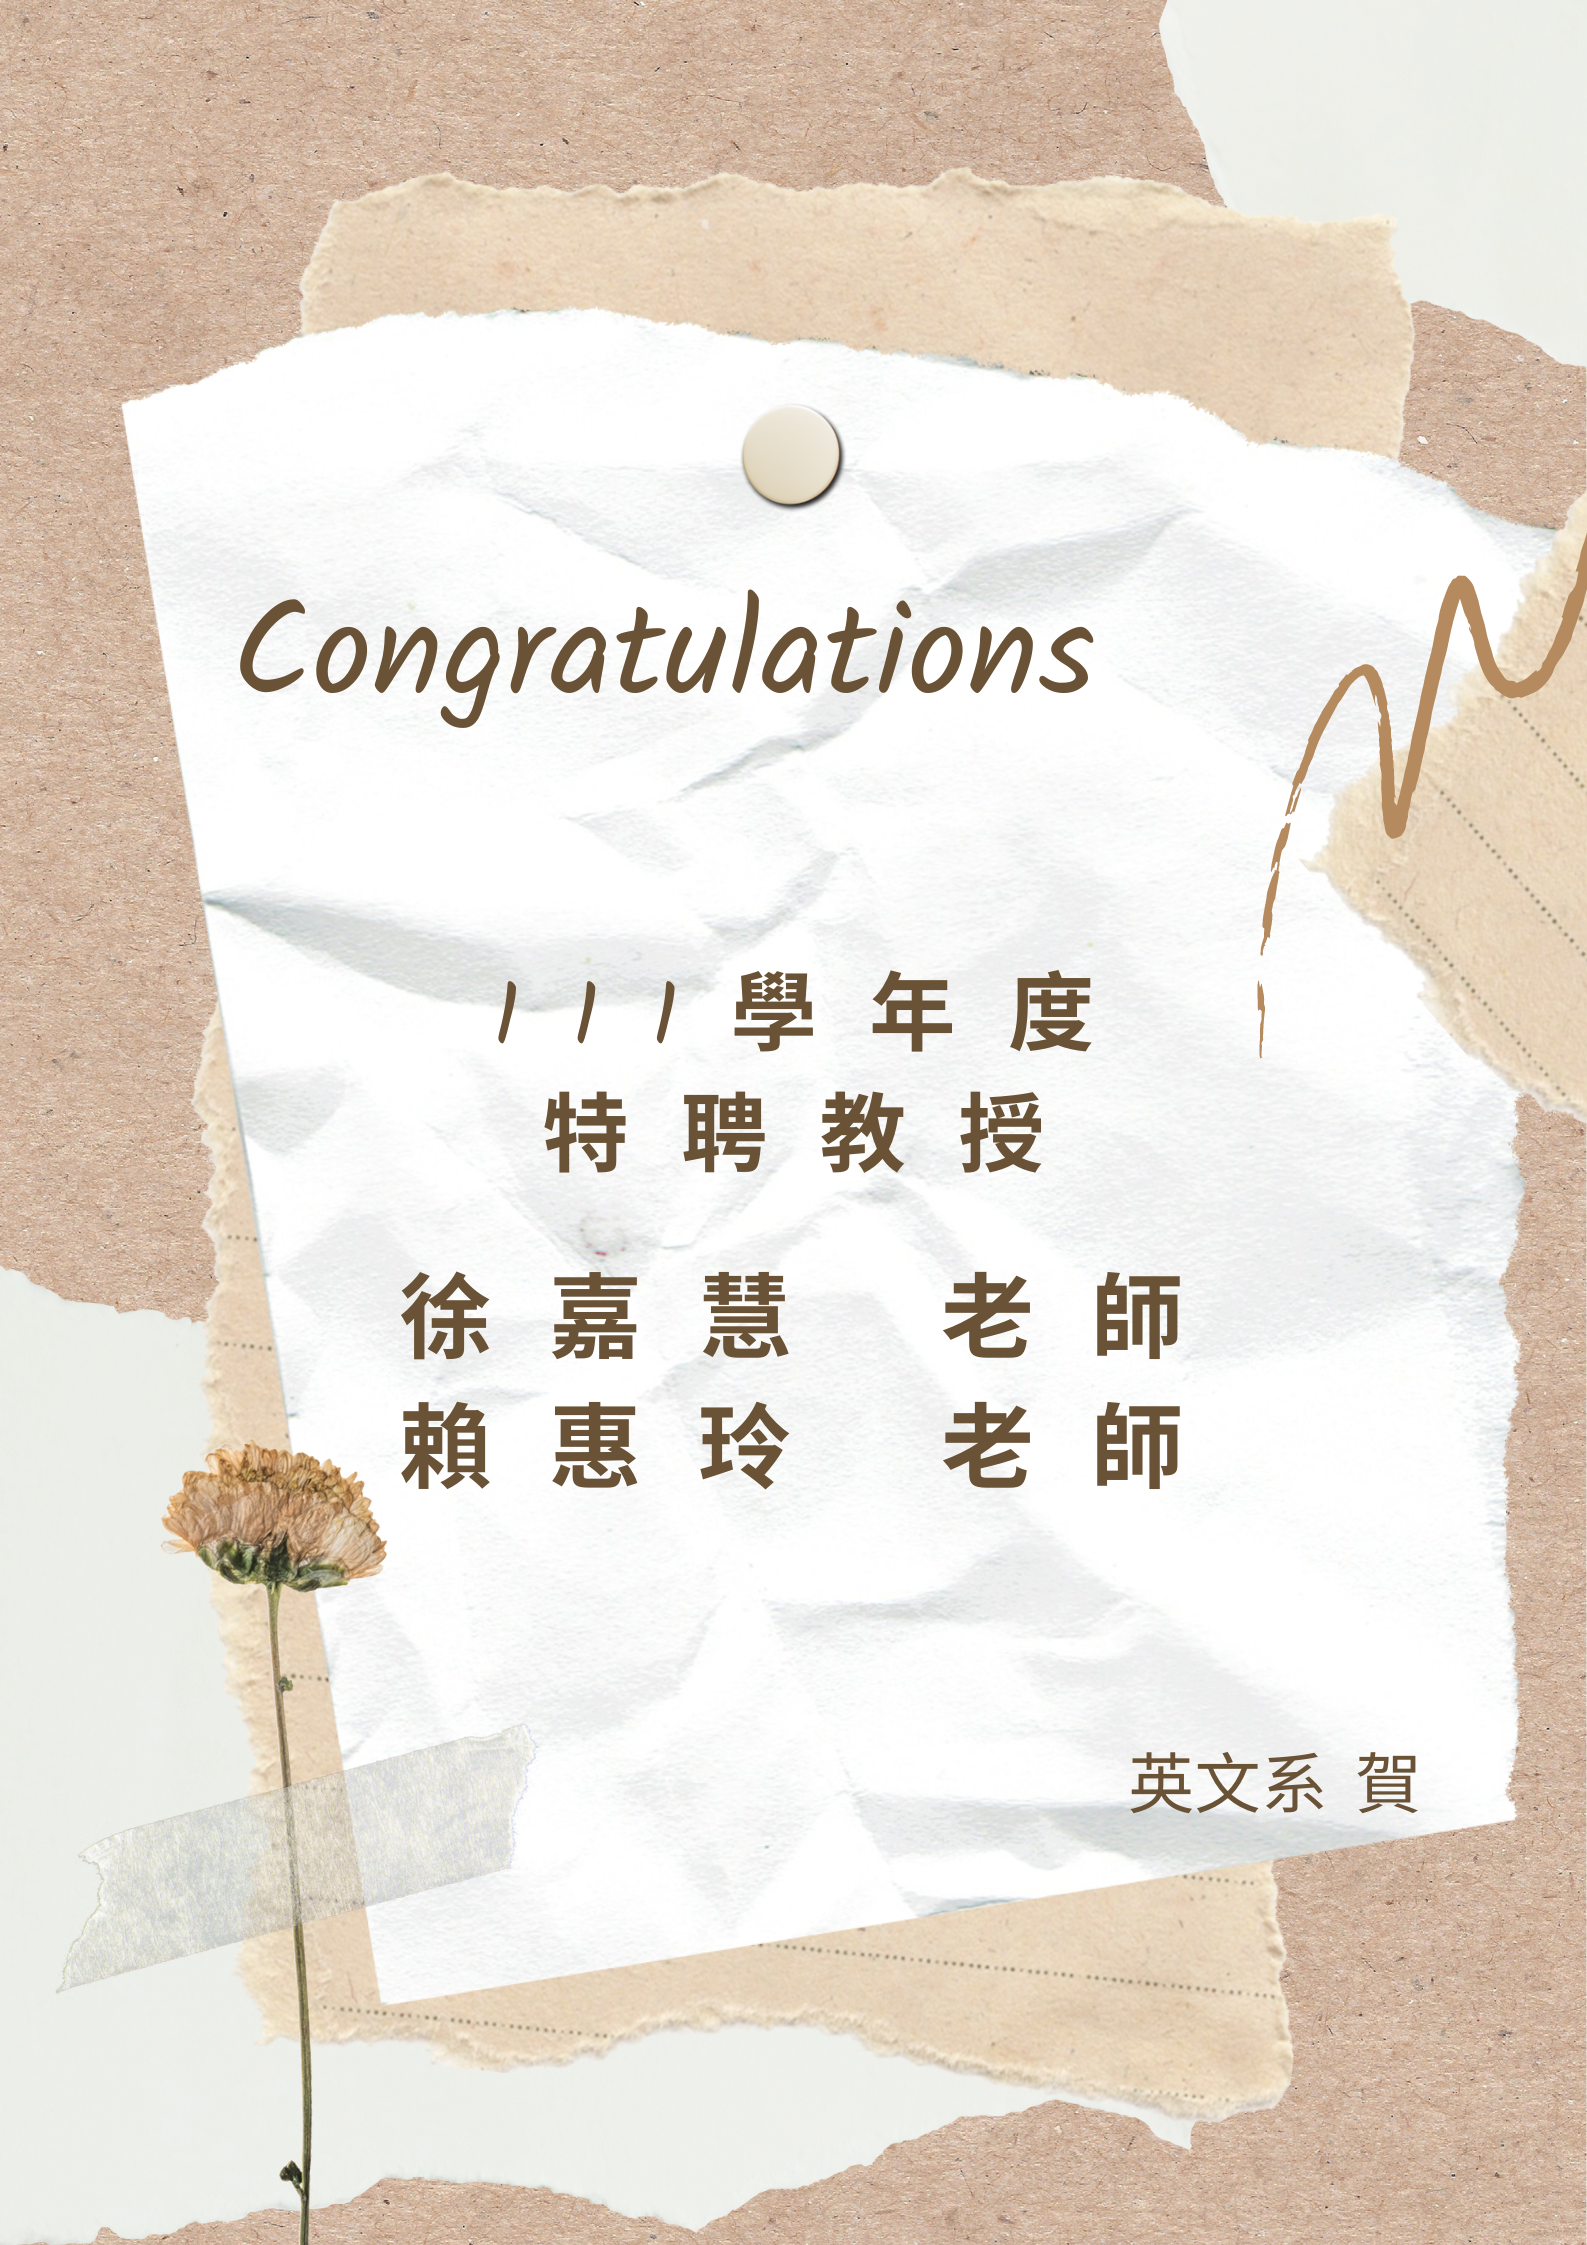 !恭喜! 徐嘉慧老師與賴惠玲老師榮獲111學年度特聘教授